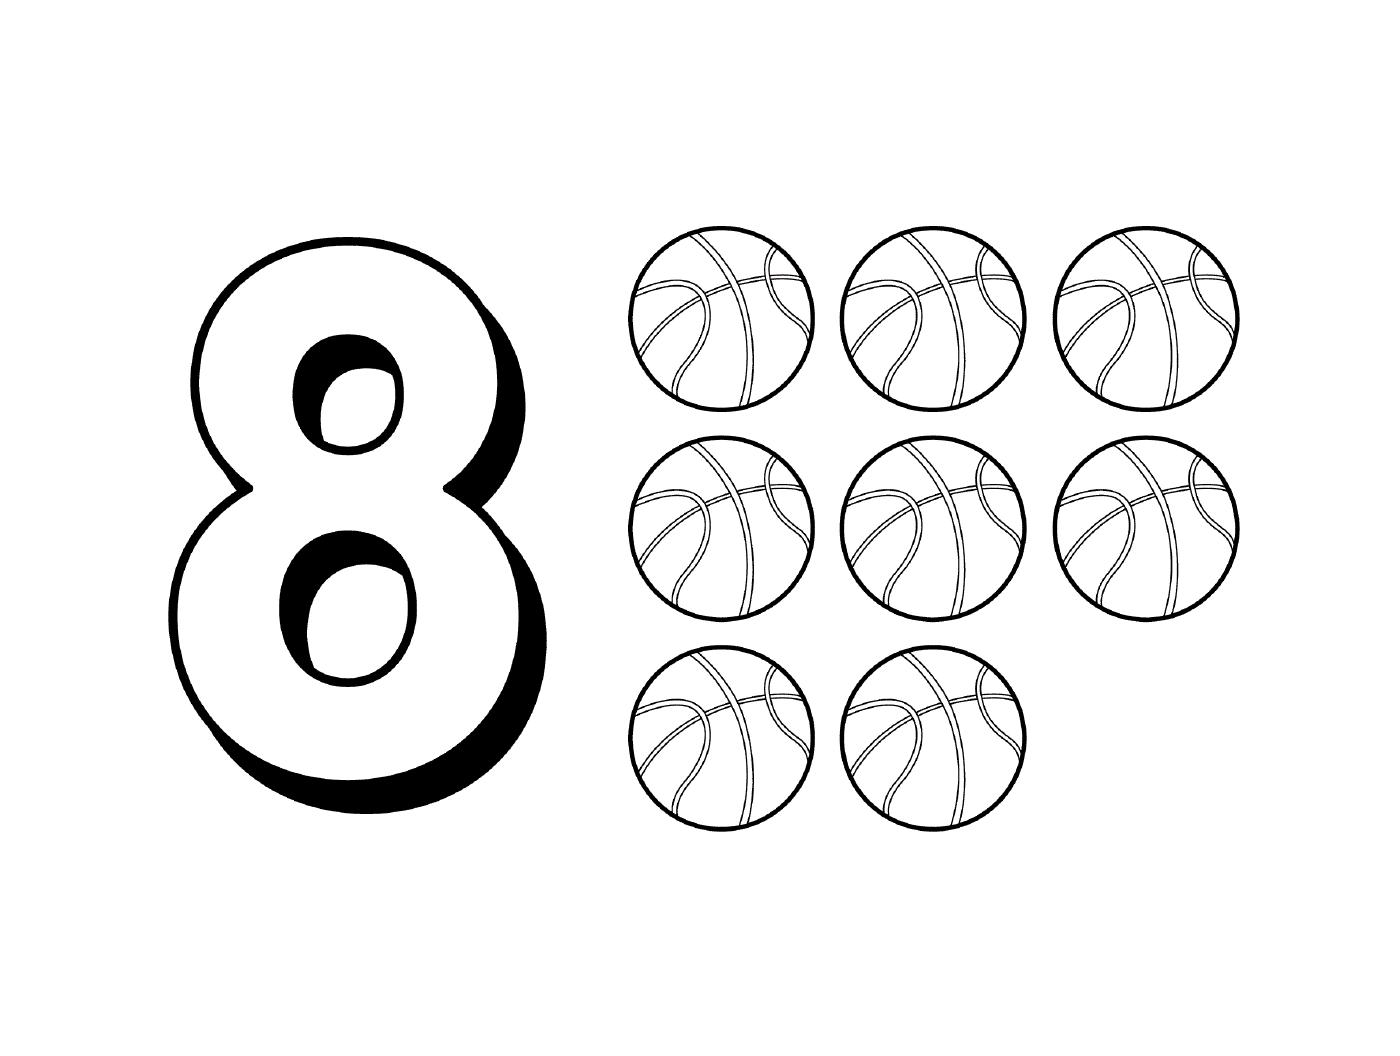  Рисунок 8 с девятью баскетбольными шарами 